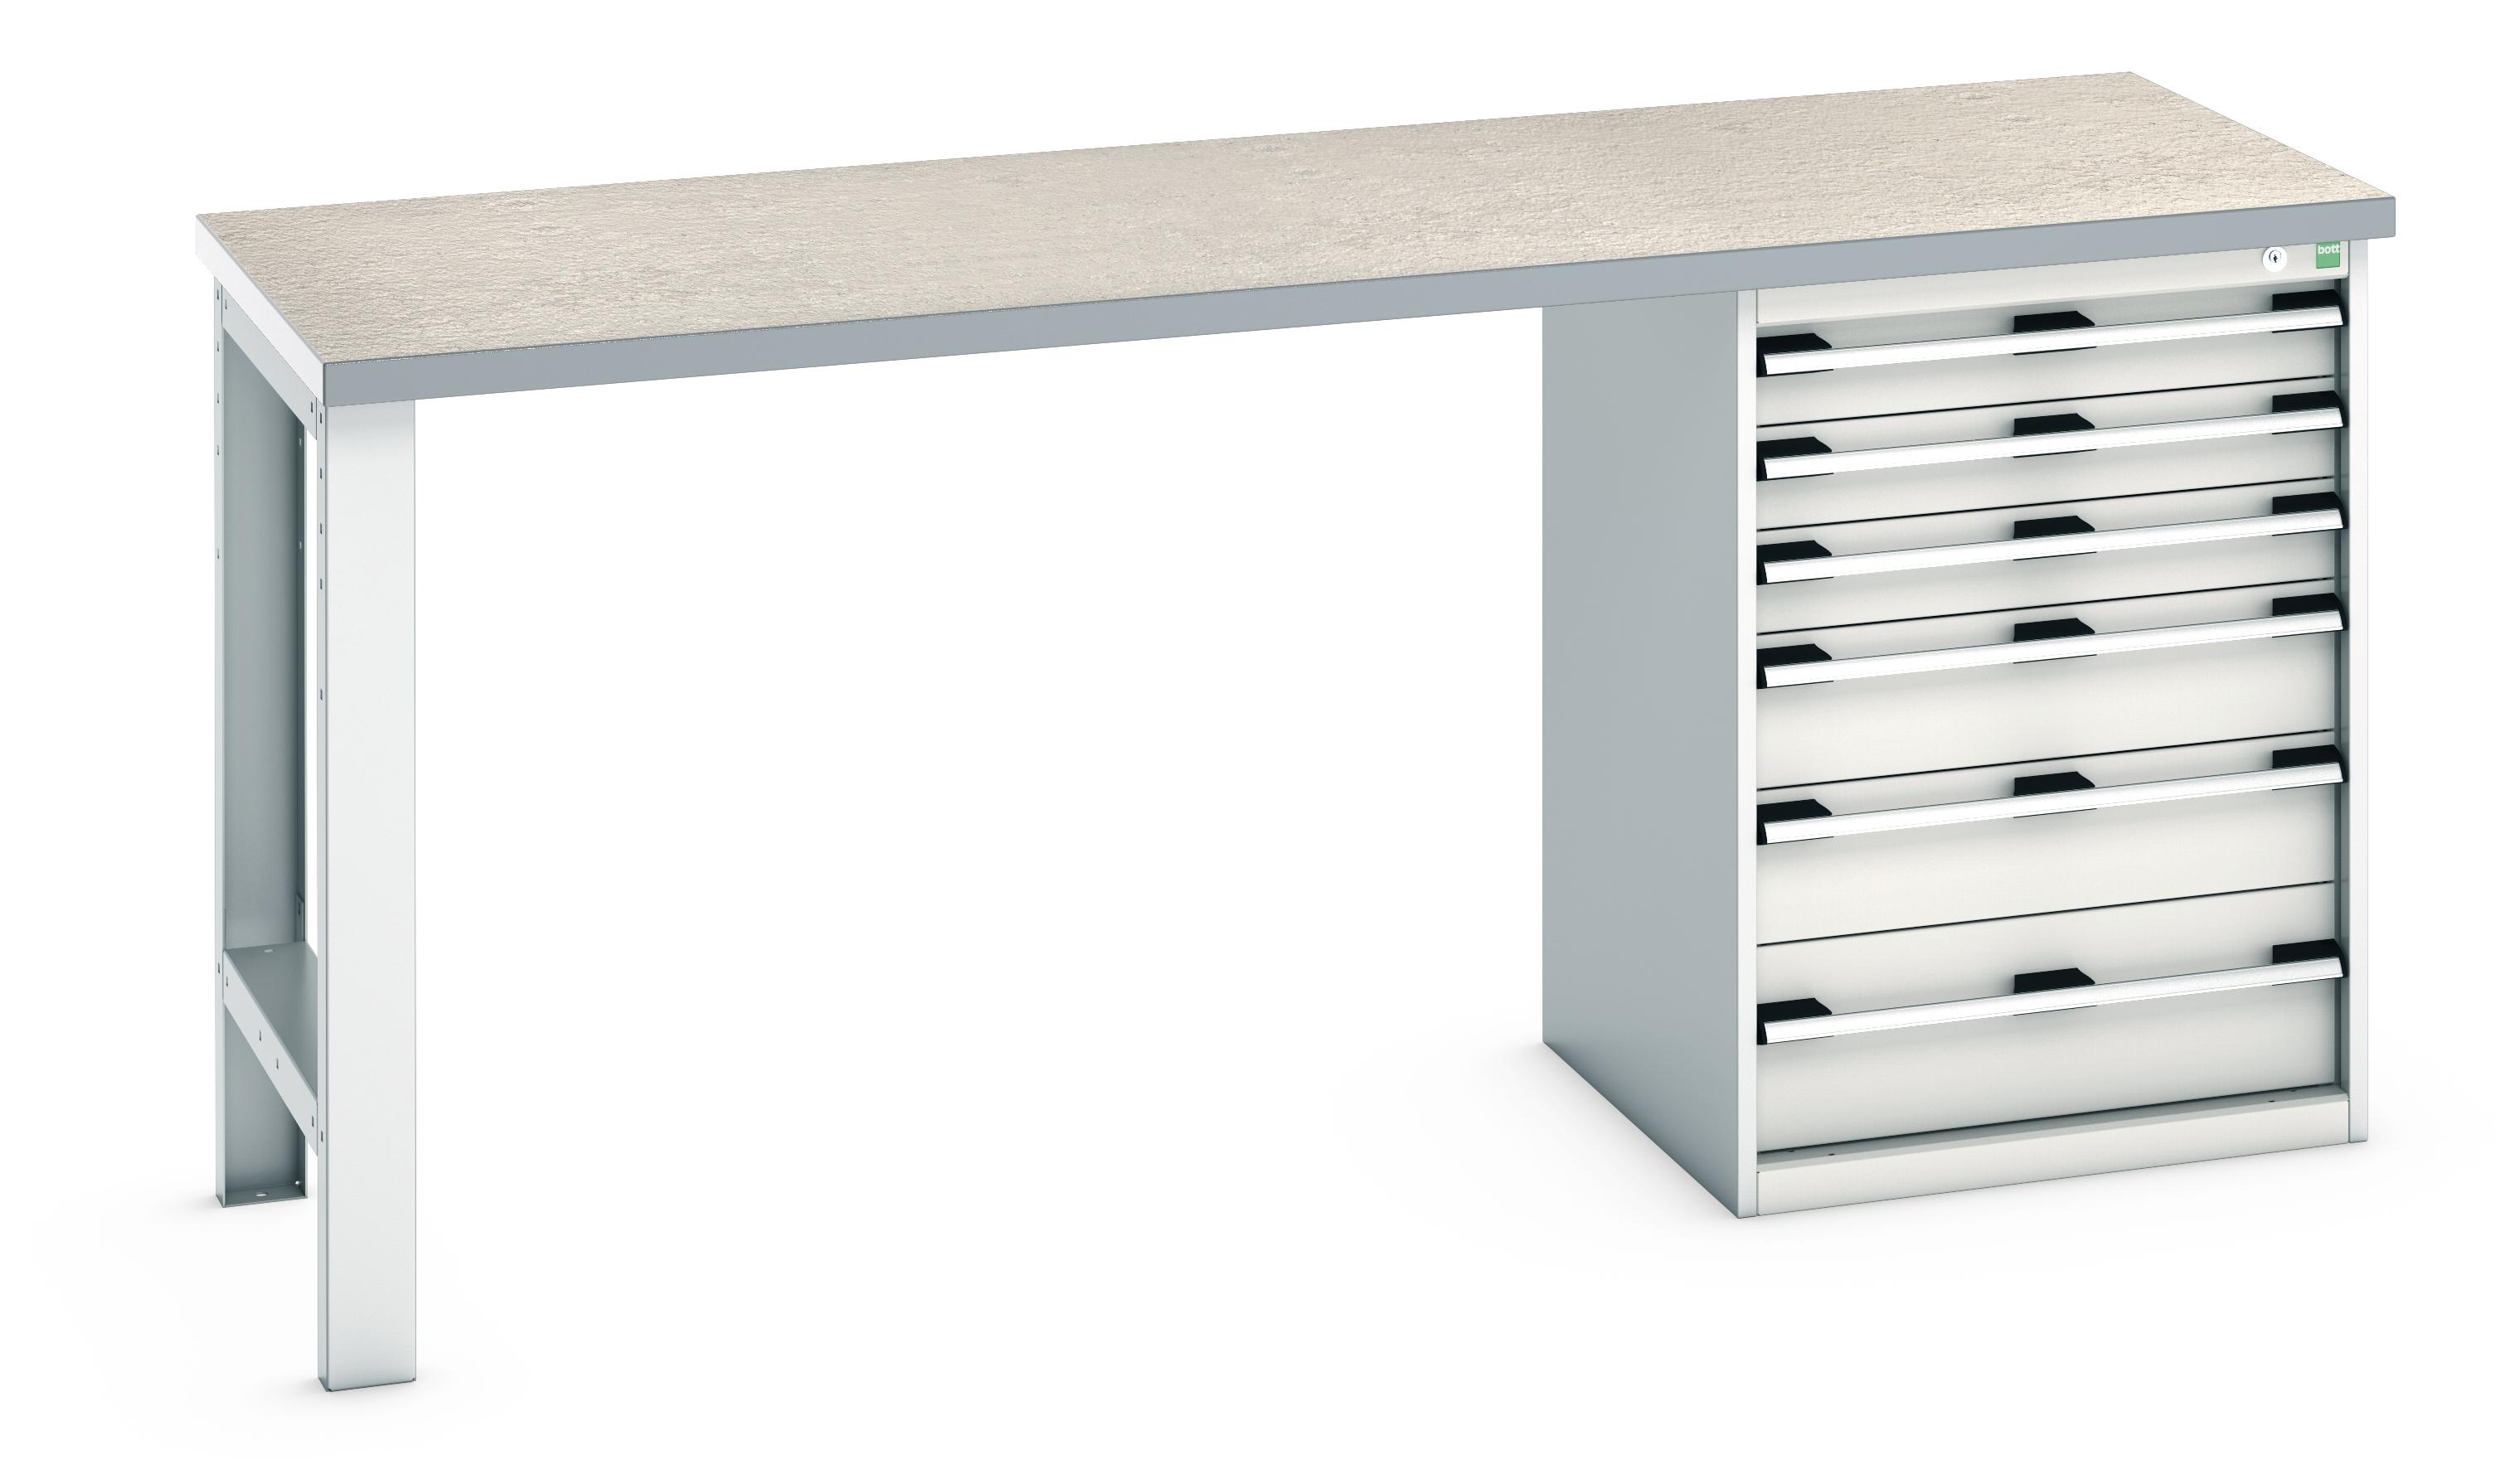 Bott Cubio Pedestal Bench With 6 Drawer Cabinet - 41003495.16V